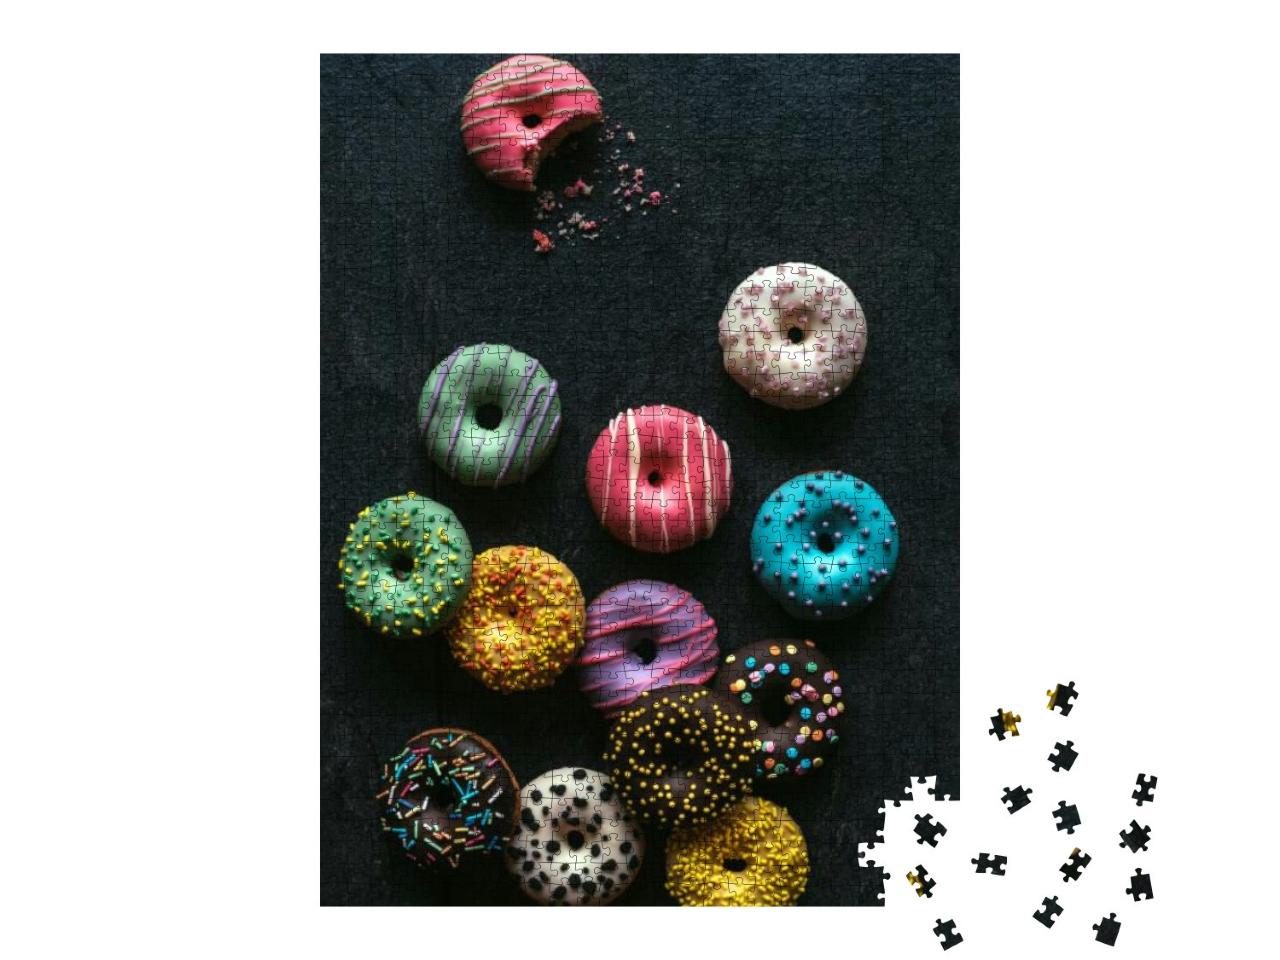 Puzzle 1000 Teile „Köstliche hausgemachte Mini-Donuts“